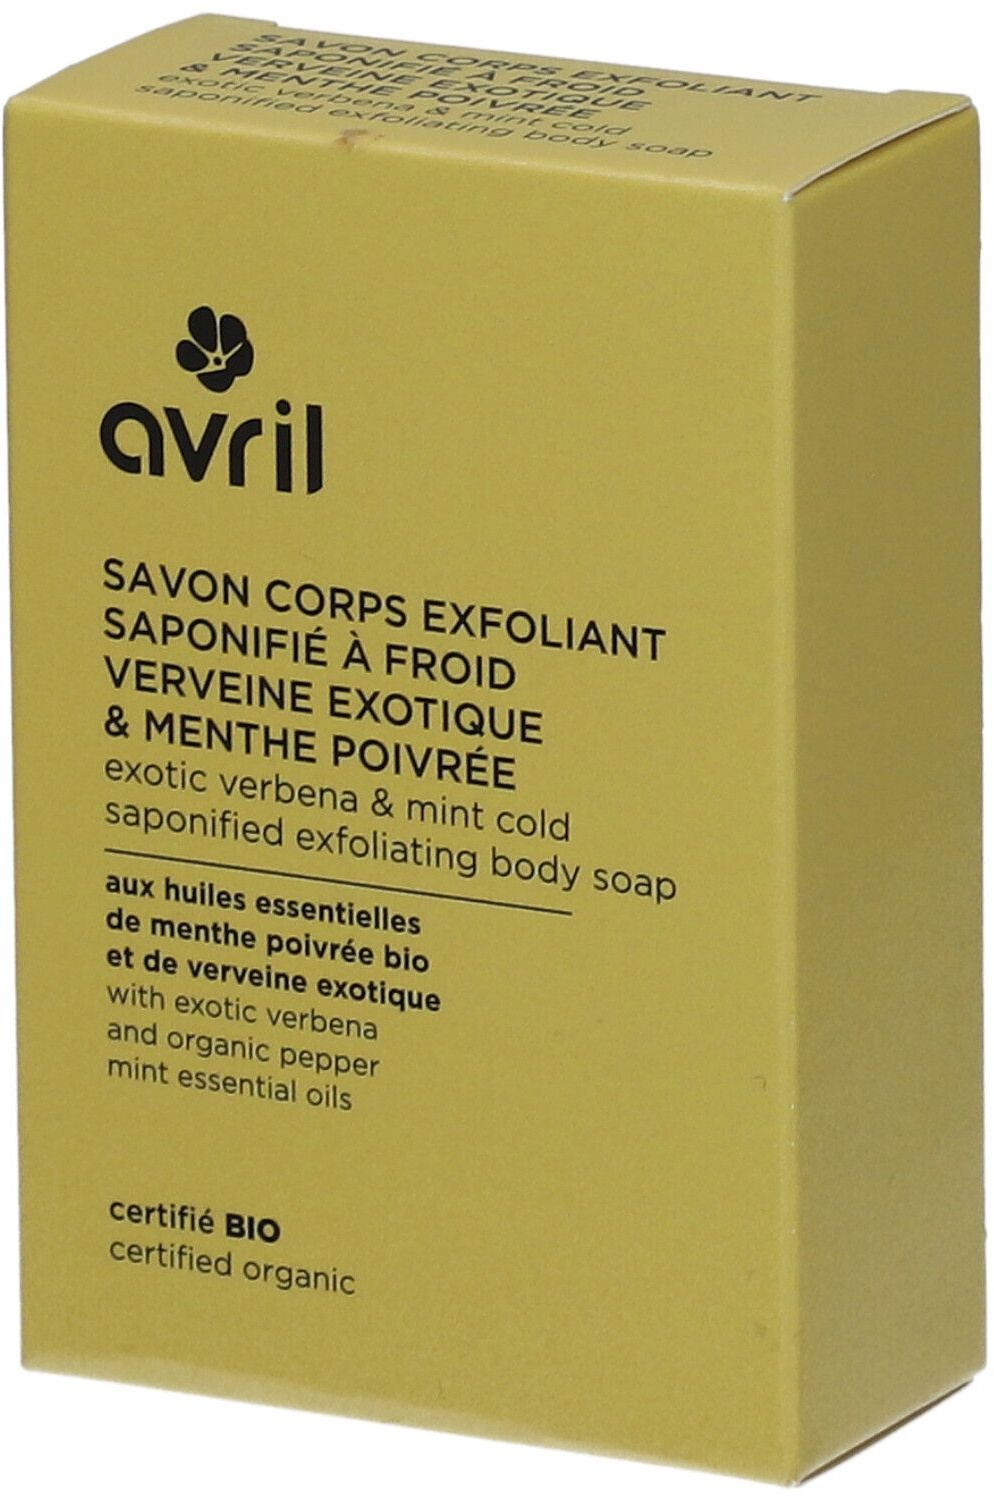 AVRIL Savon Corps Exfoliant Sponifié à Froid Verveine Exotique & Menthe Poivrée 100 g savon